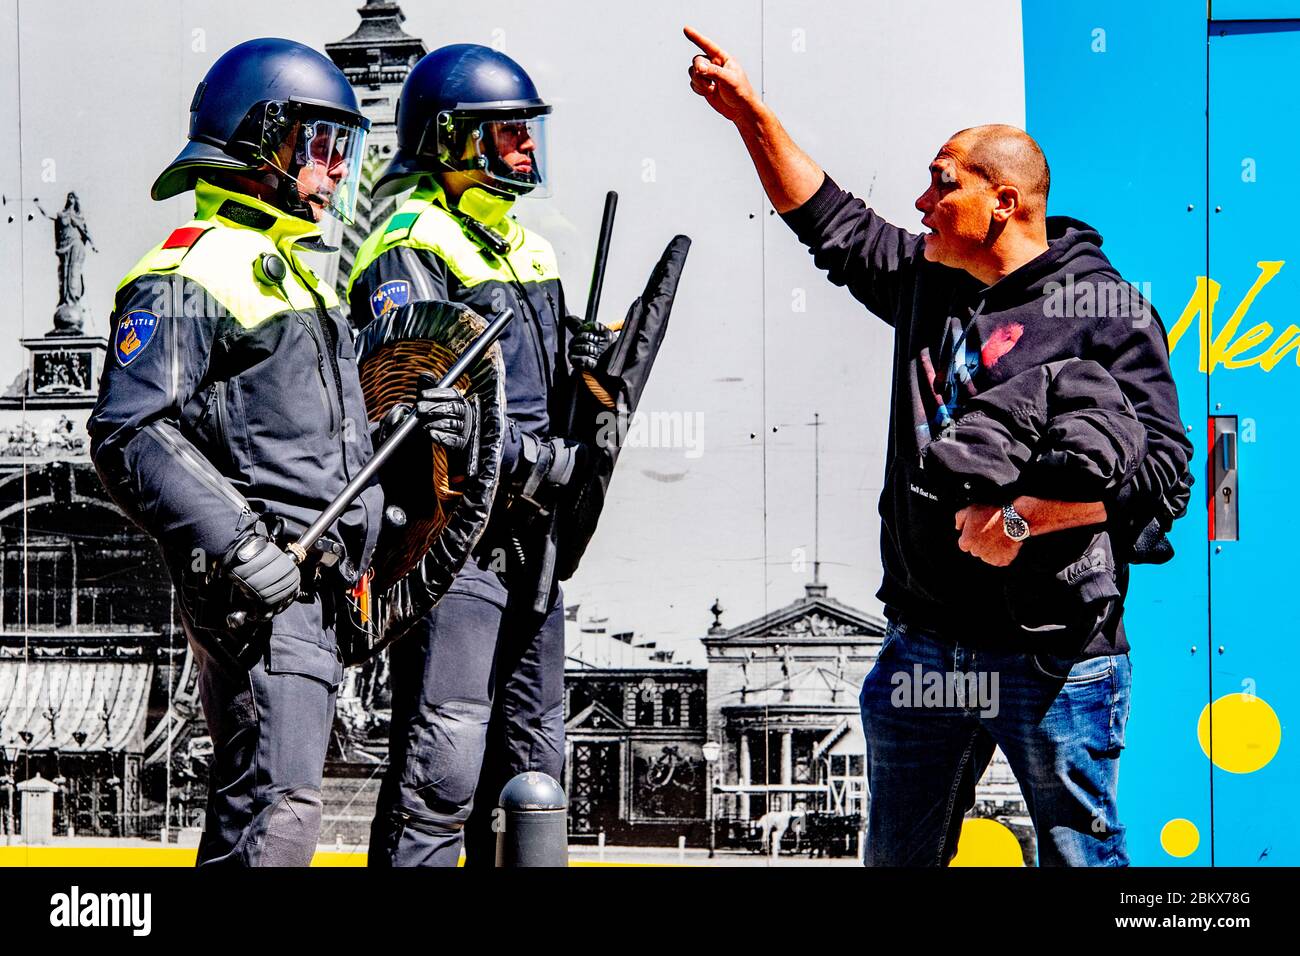 Un dimostratore urla contro la polizia antisommossa durante la protesta.decine di attivisti anti-blocco sono stati arrestati mentre dimostravano contro le misure contro il virus corona all'Aia. Foto Stock